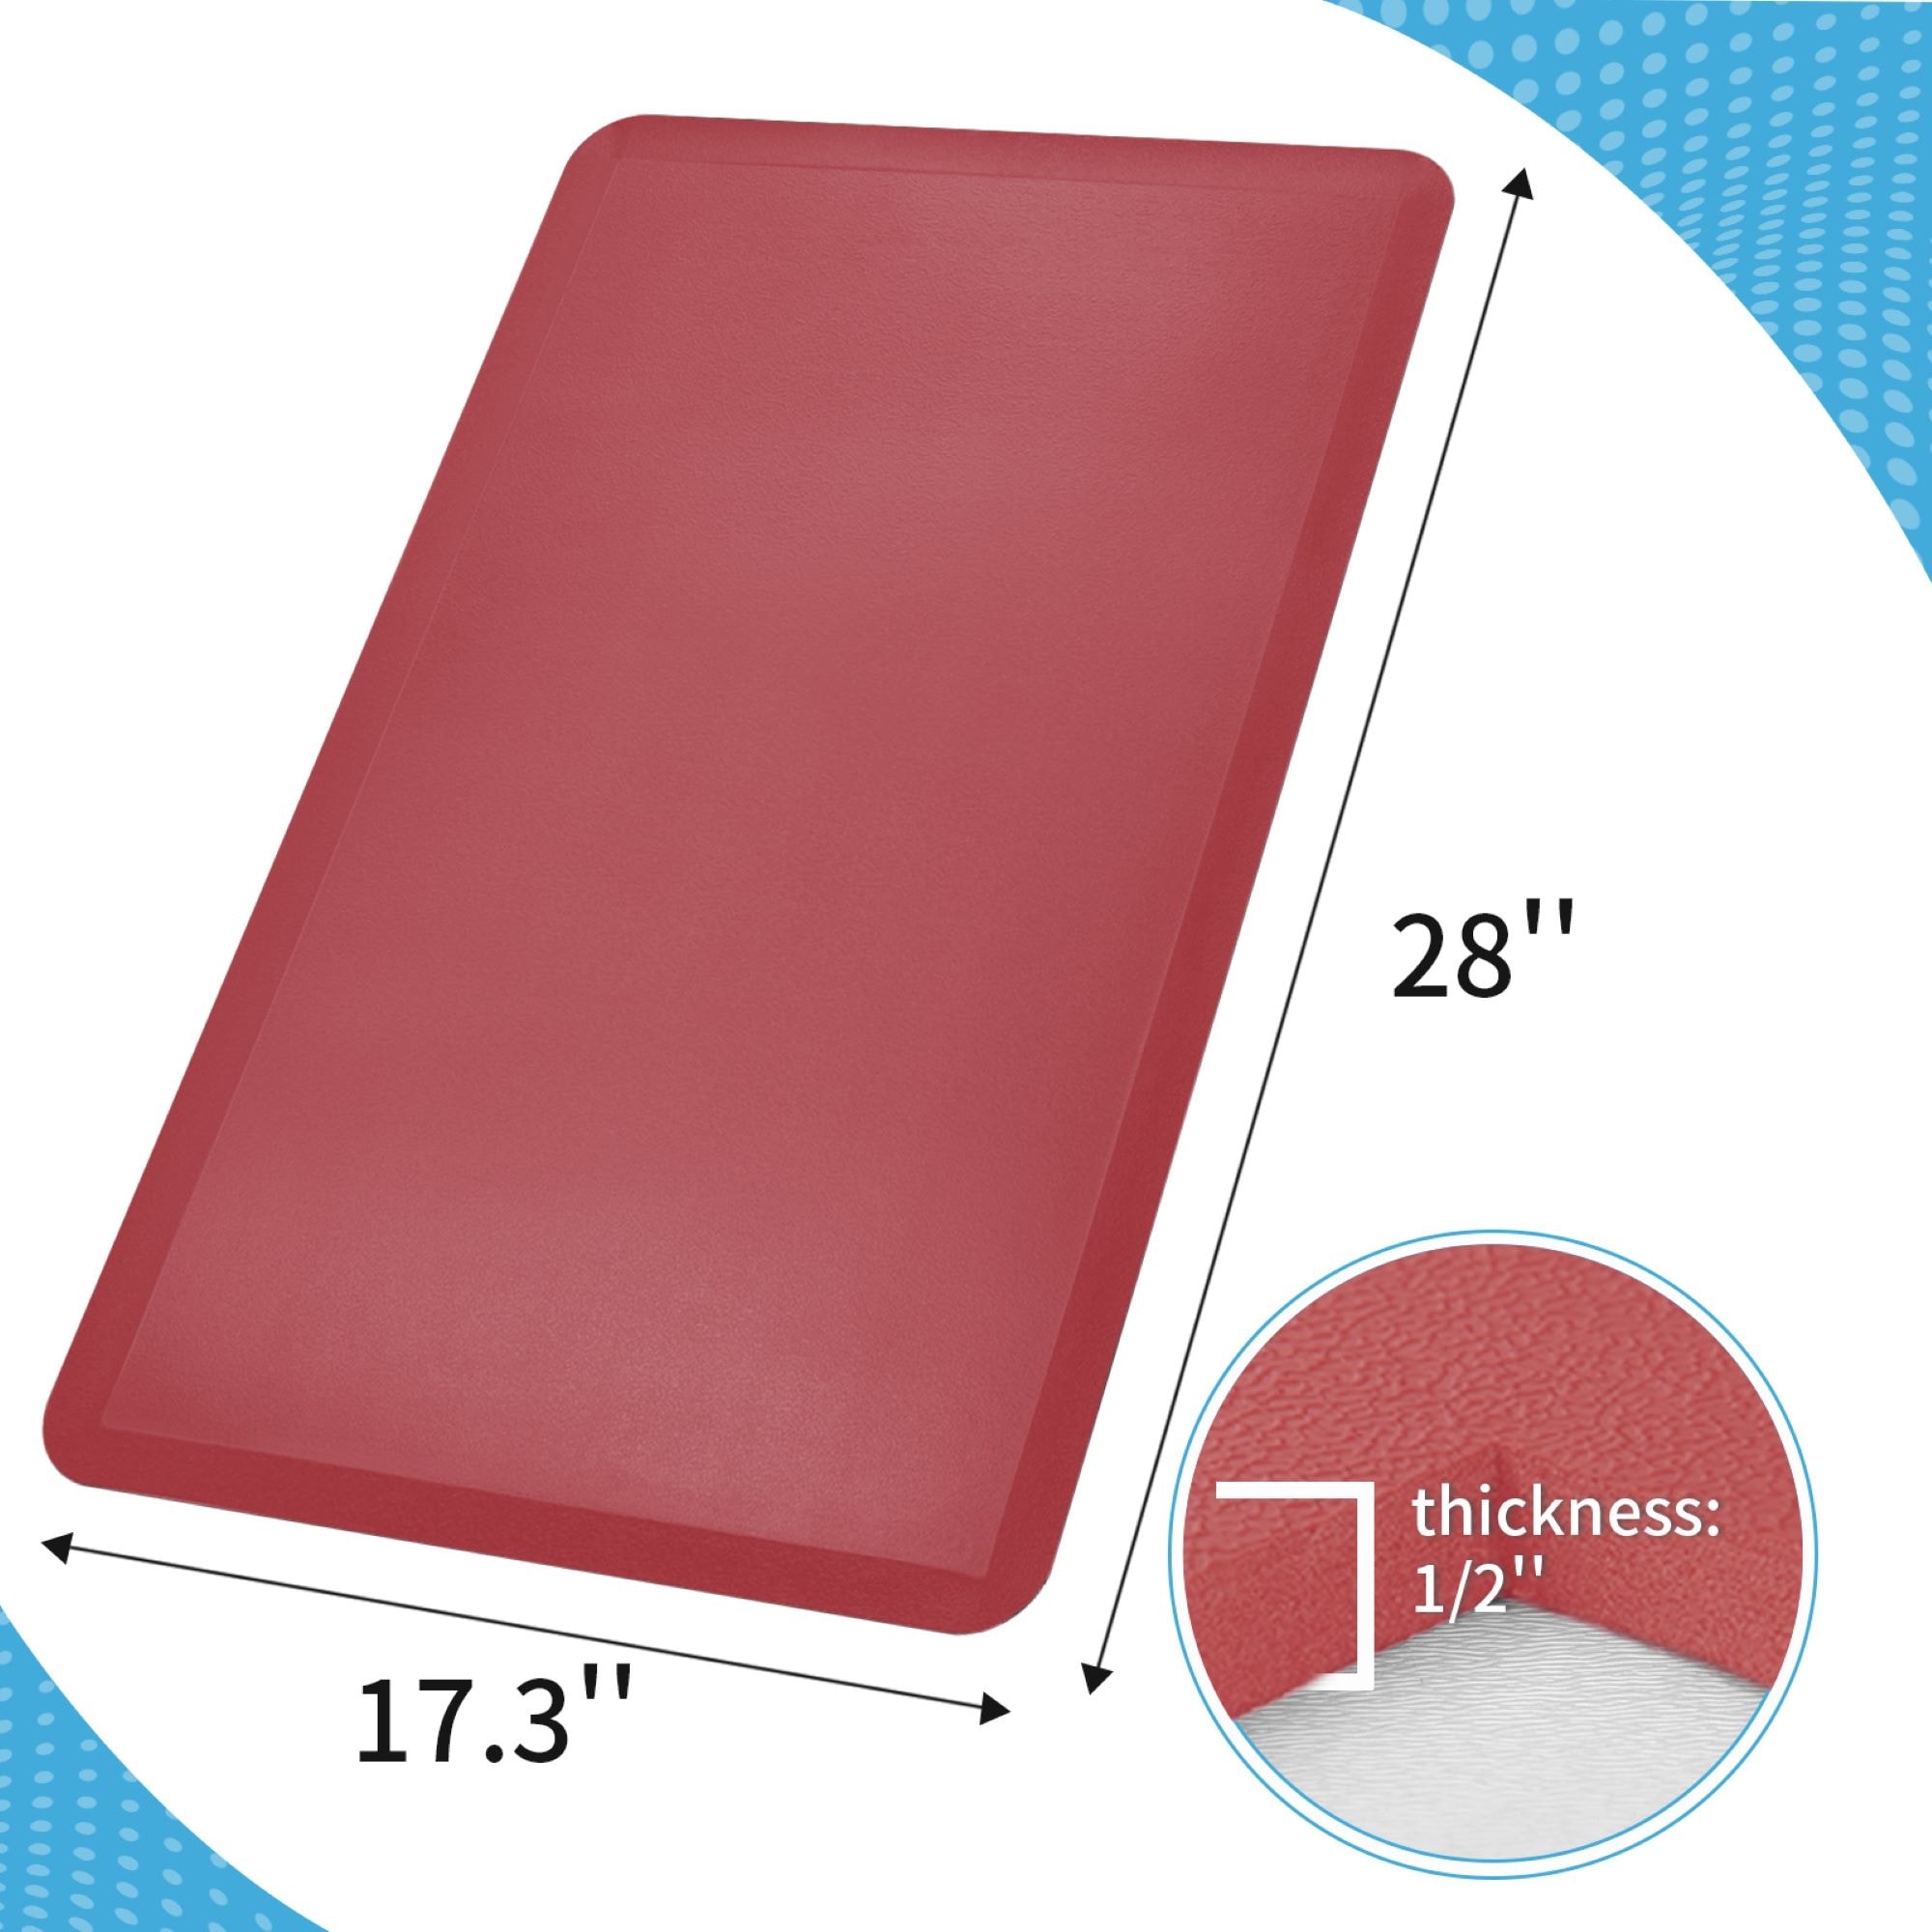 Anti Slip Kitchen Floor Mat, Half Round (Red, 27.8 x 17 in